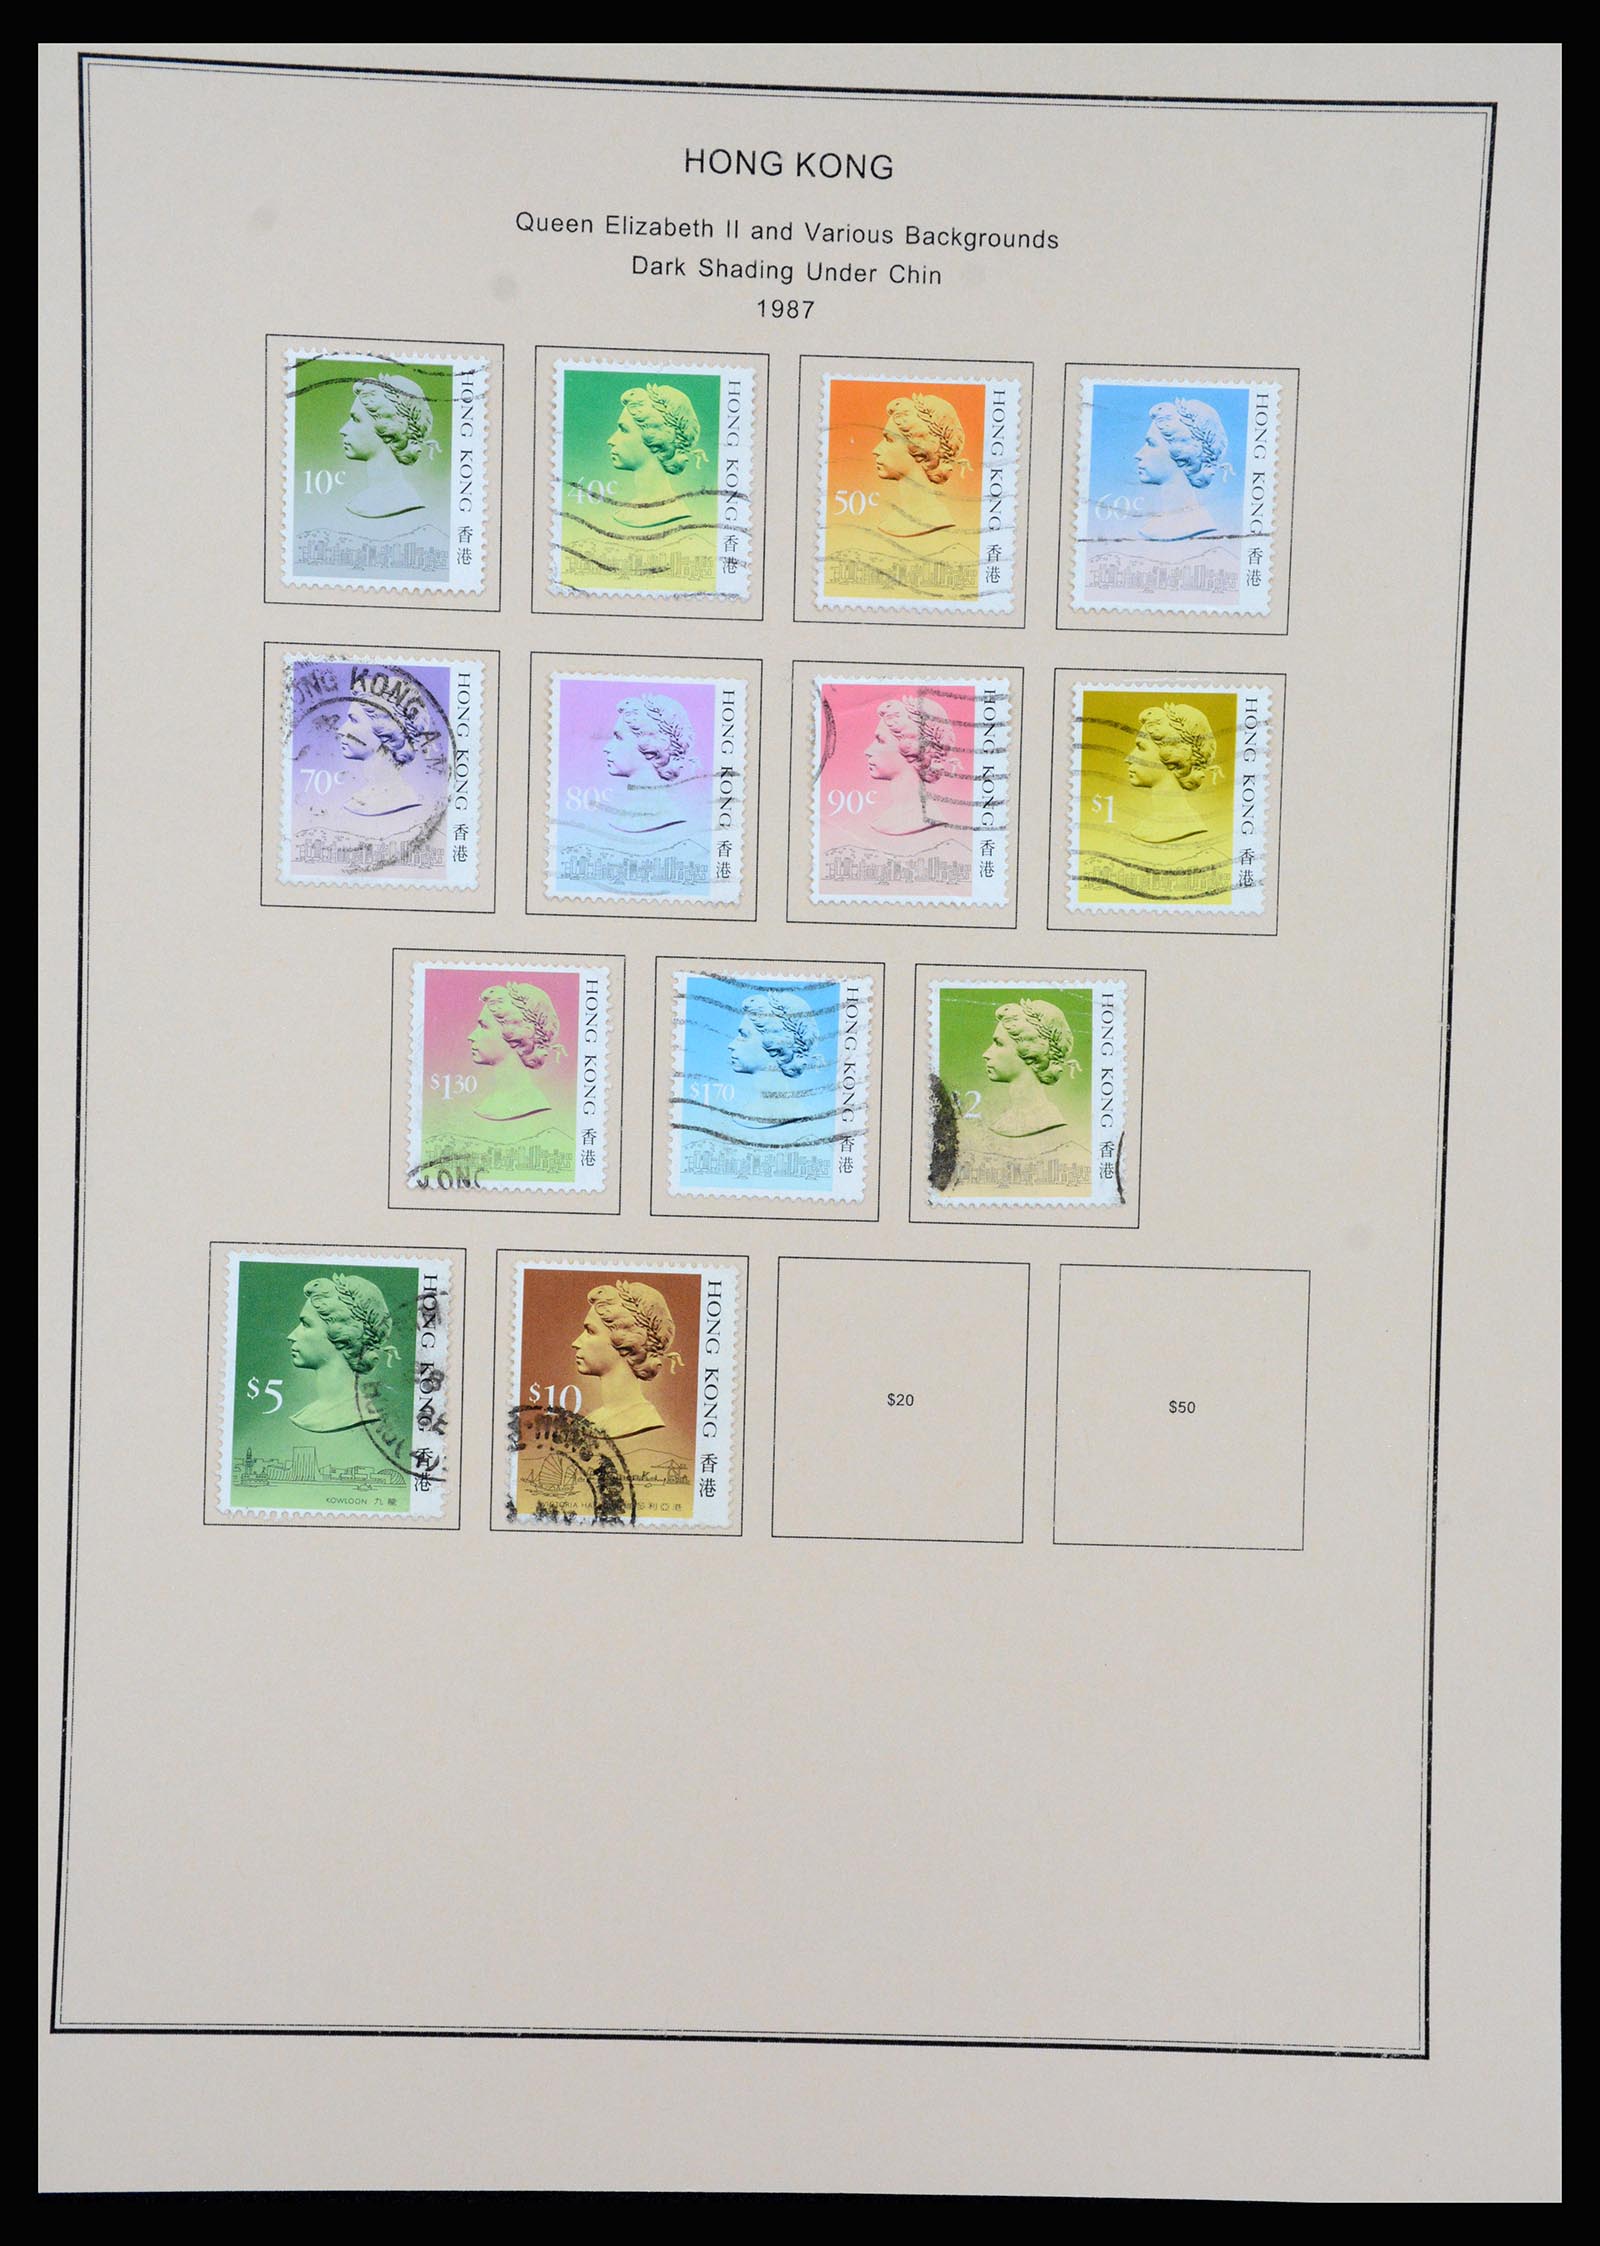 37210 060 - Stamp collection 37210 Hong Kong 1862-2000.